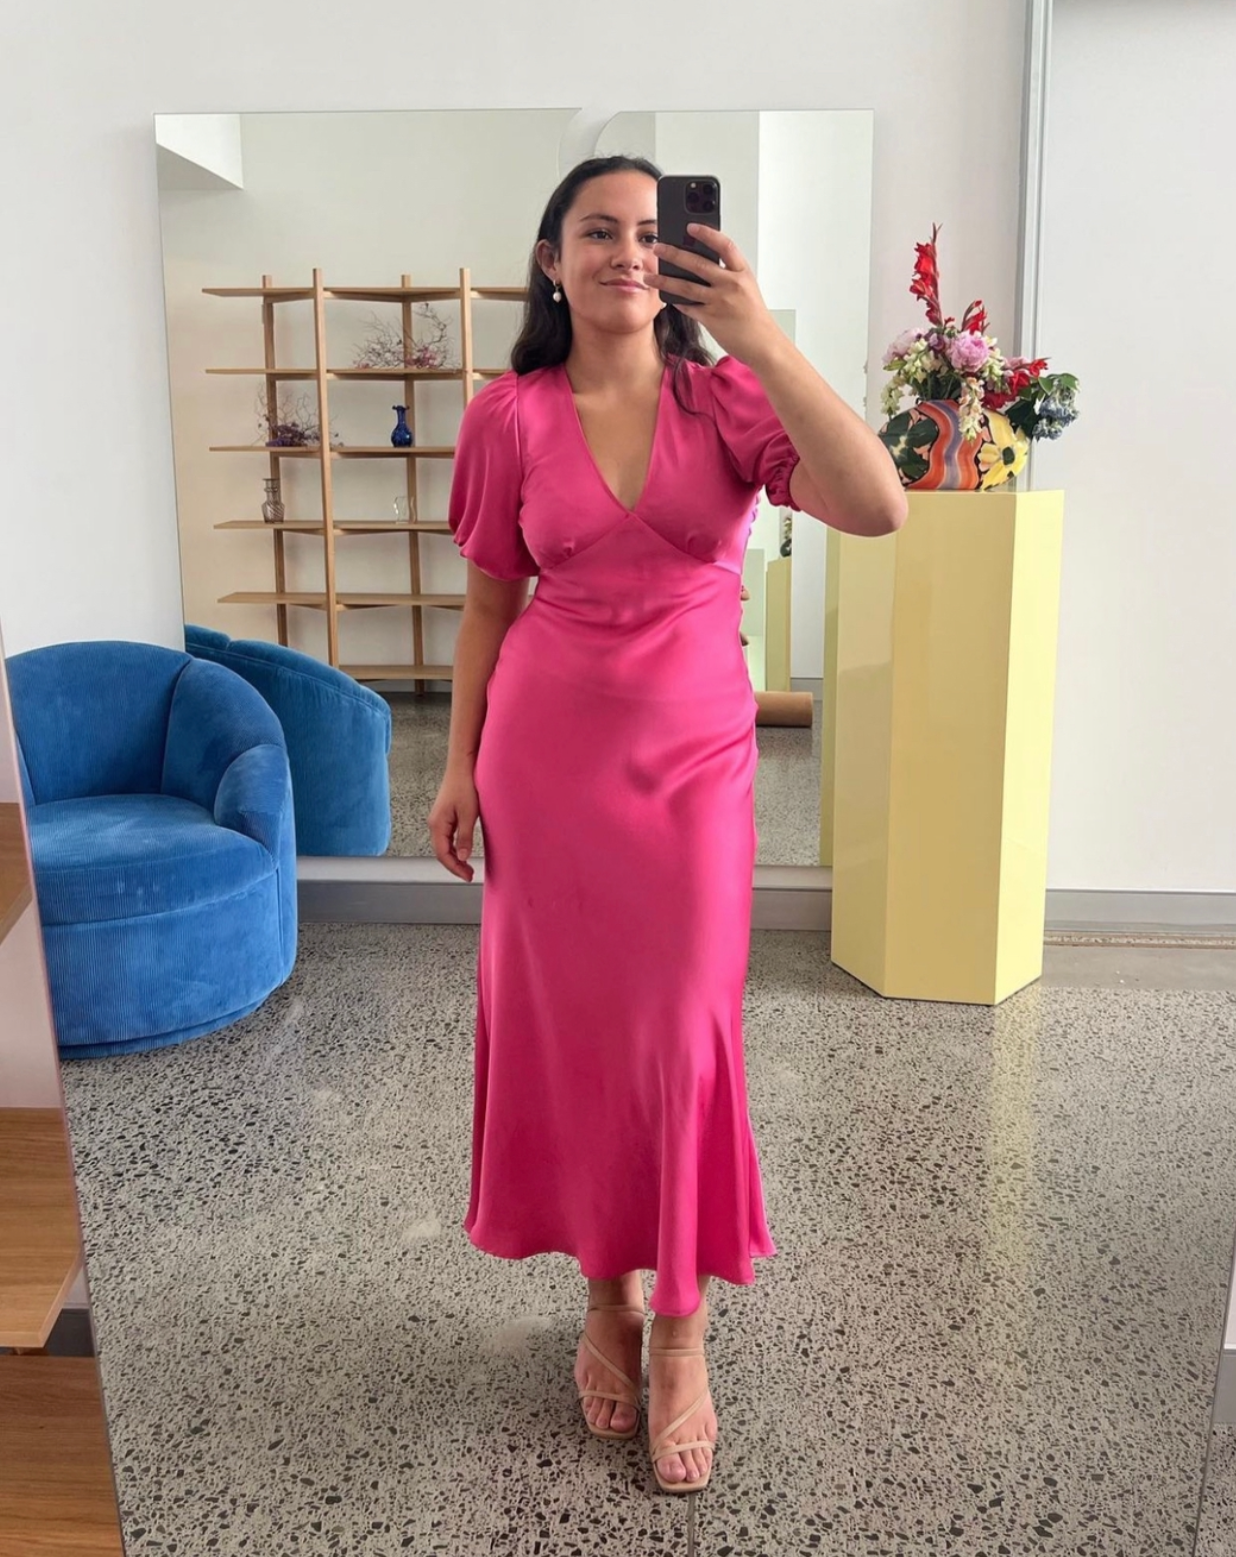 Uma Dress in Hot Pink